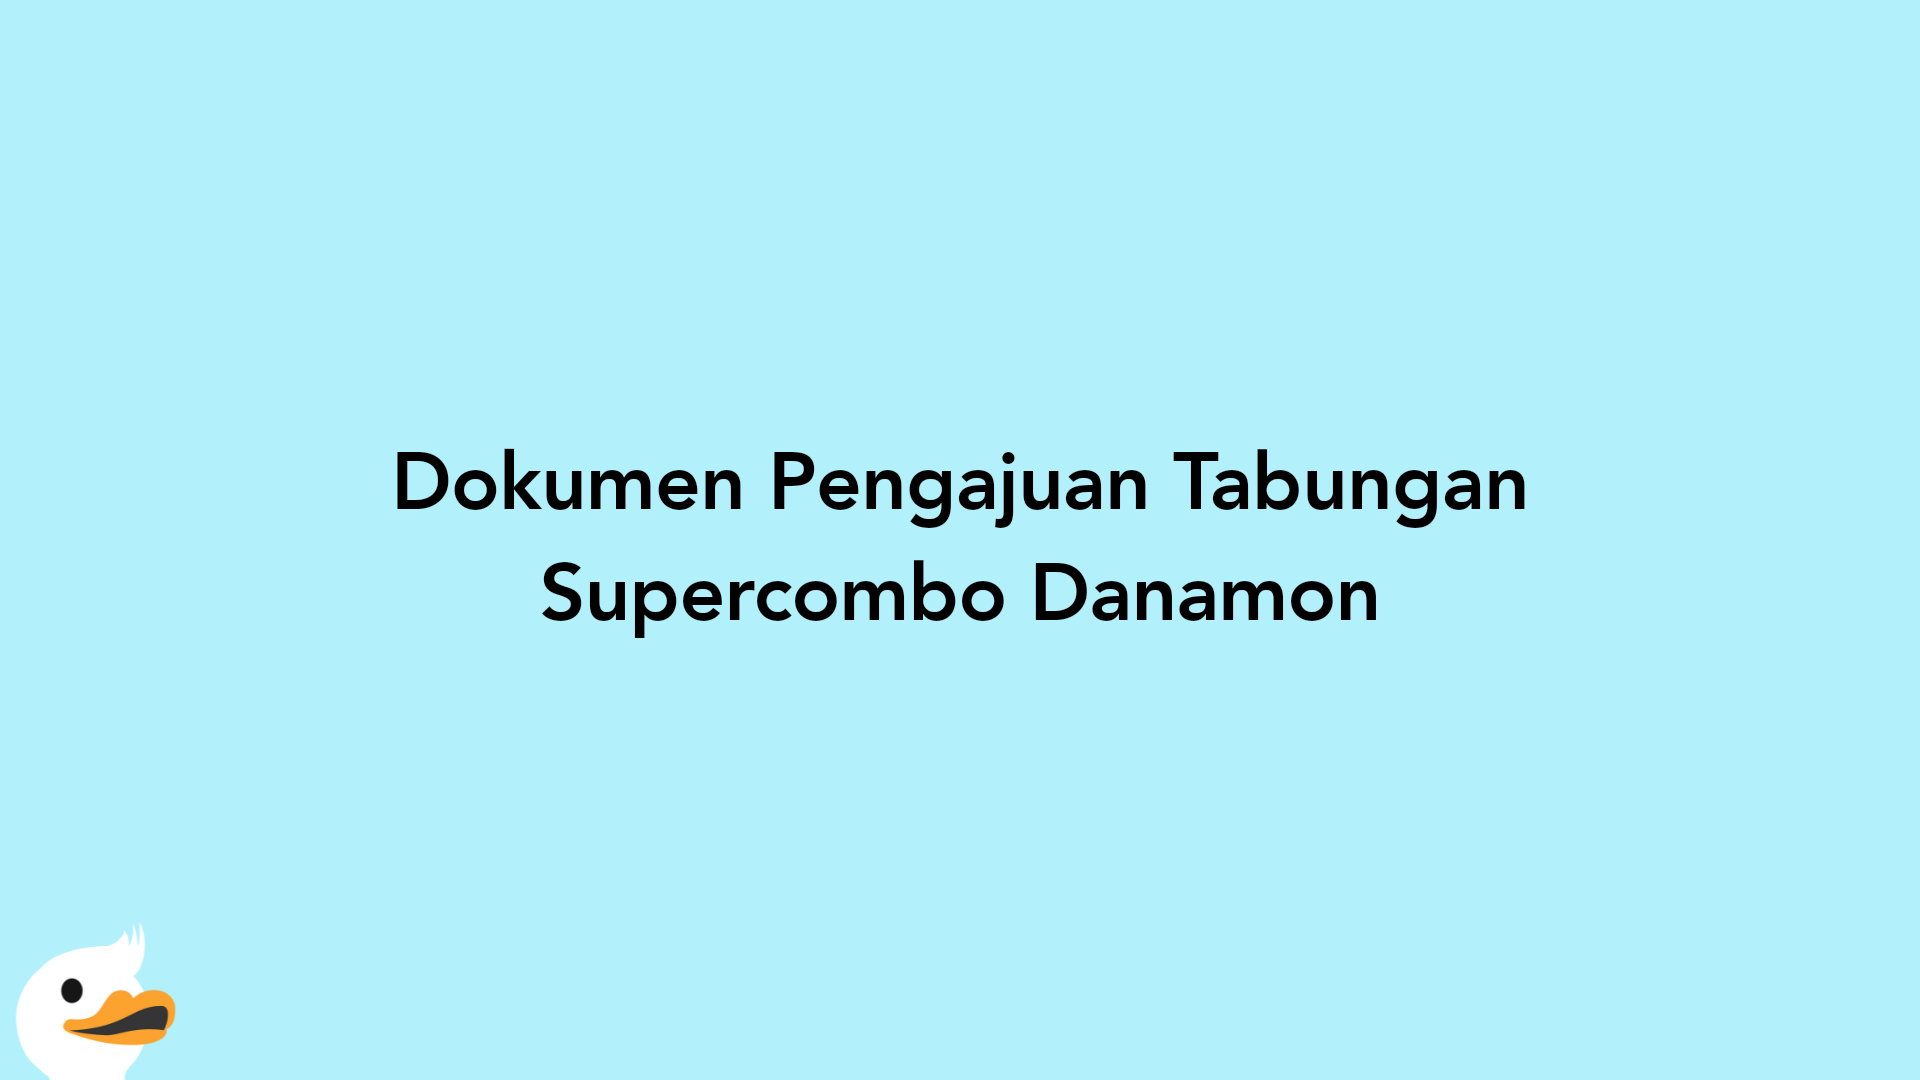 Dokumen Pengajuan Tabungan Supercombo Danamon